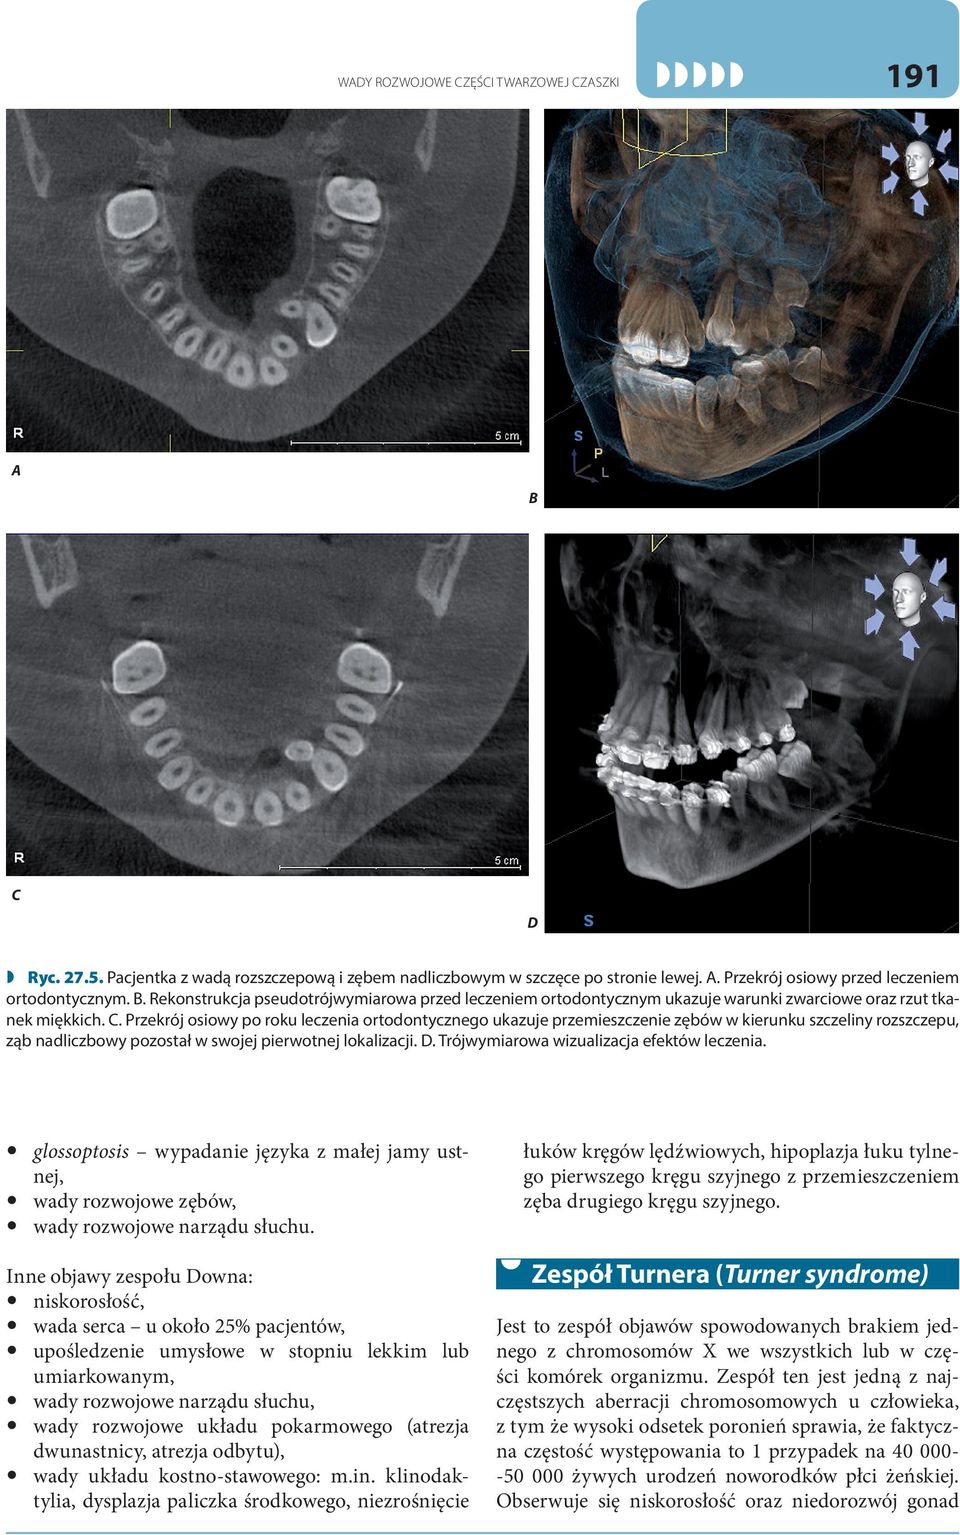 Przekrój osiowy po roku leczenia ortodontycznego ukazuje przemieszczenie zębów w kierunku szczeliny rozszczepu, ząb nadliczbowy pozostał w swojej pierwotnej lokalizacji. D.